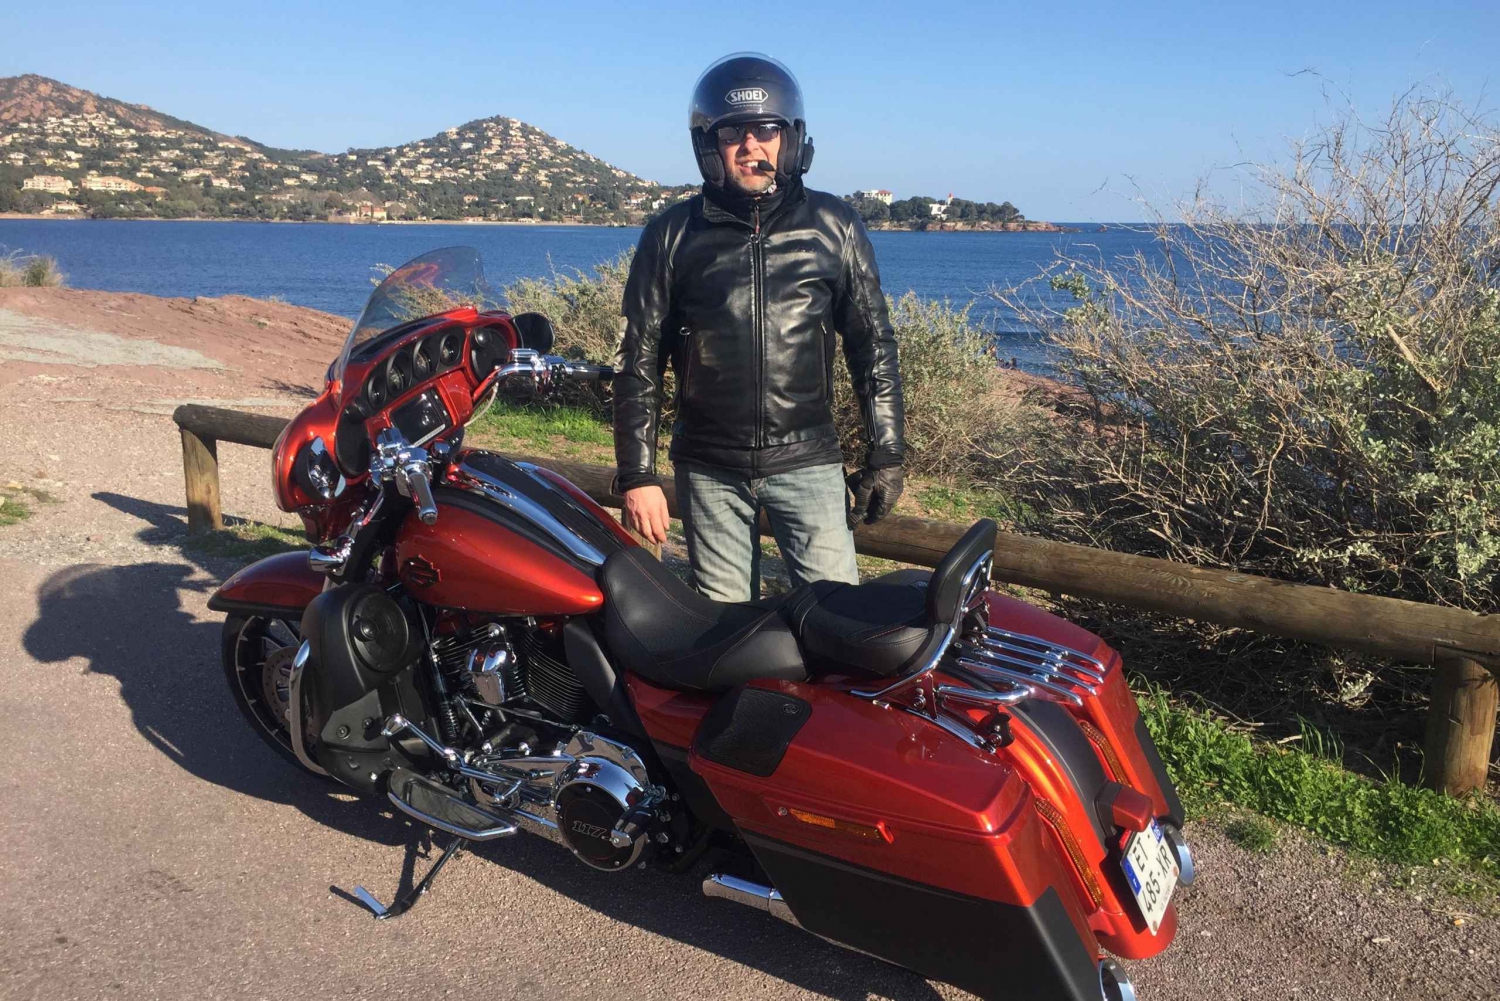 Harley Davidson-passasjer guidet rundtur på veiene i Cannes